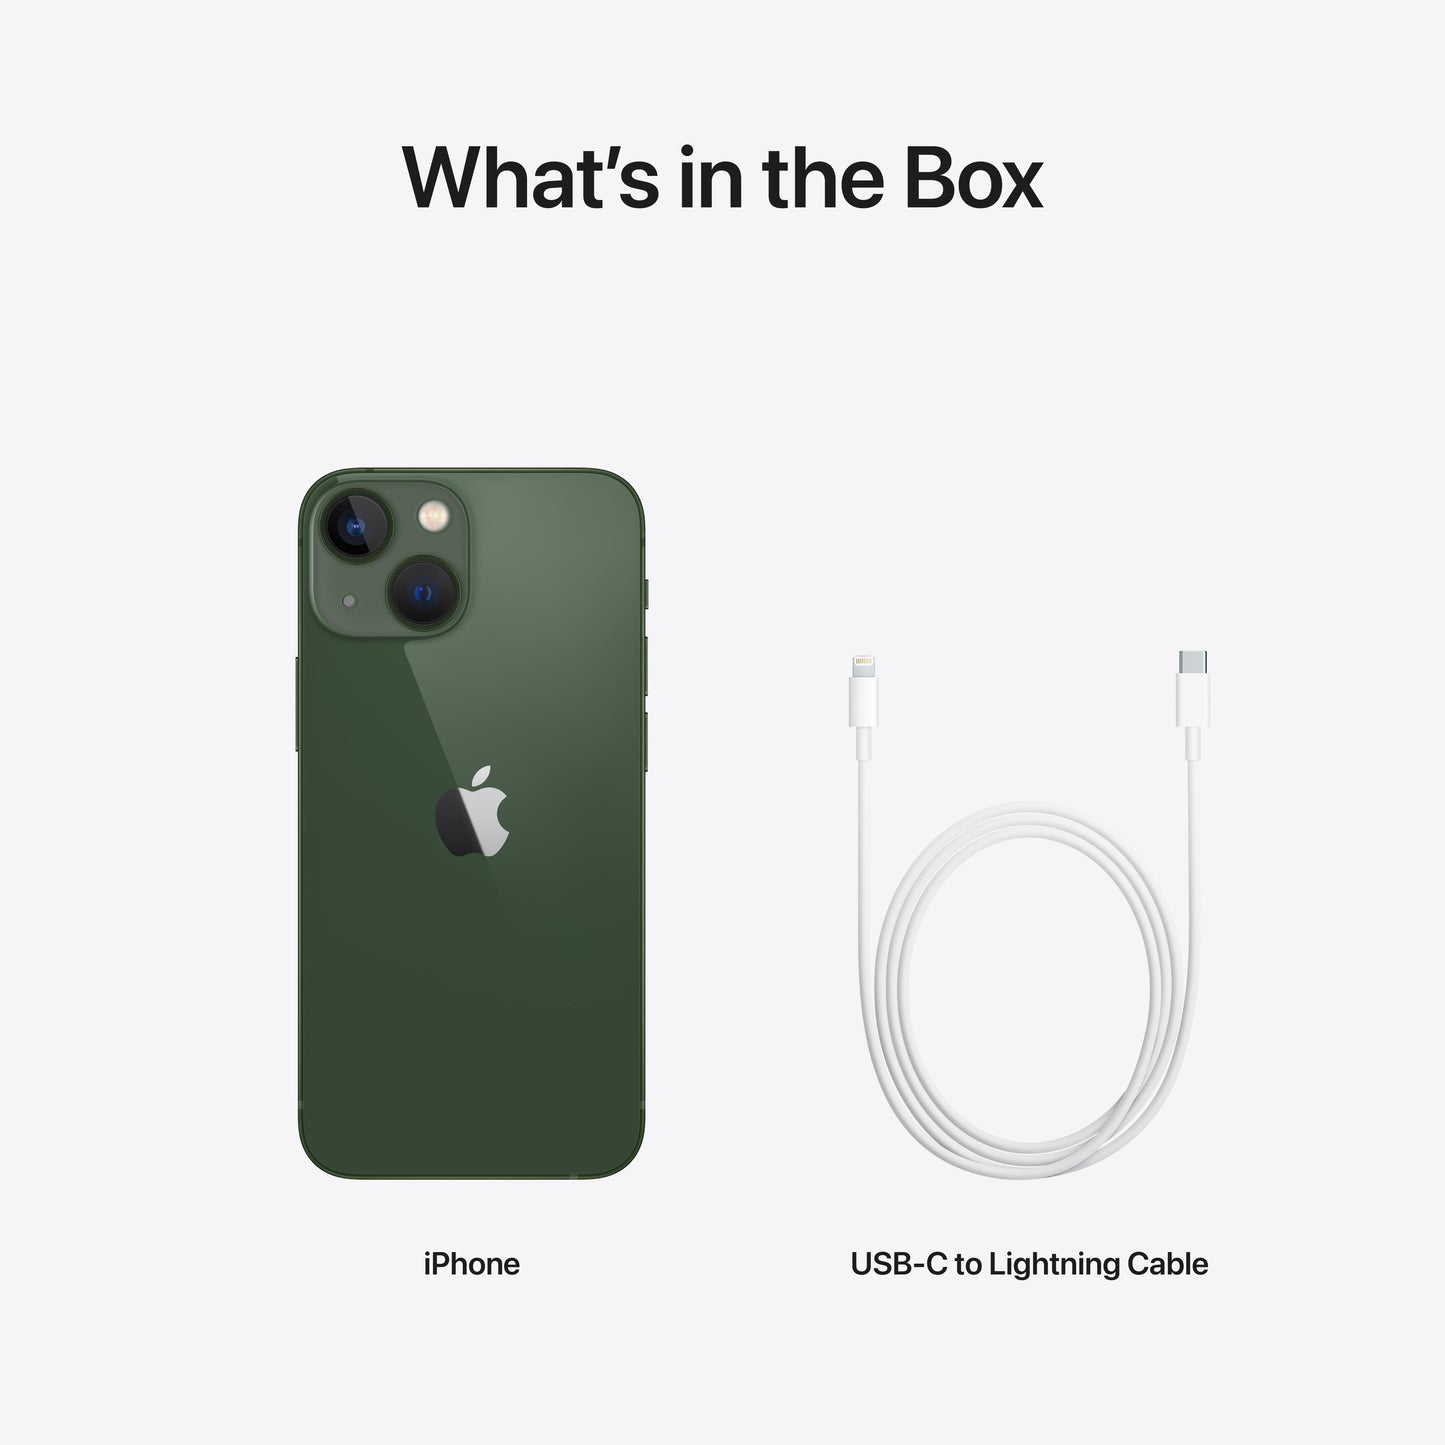 iPhone 13 mini 512GB Green